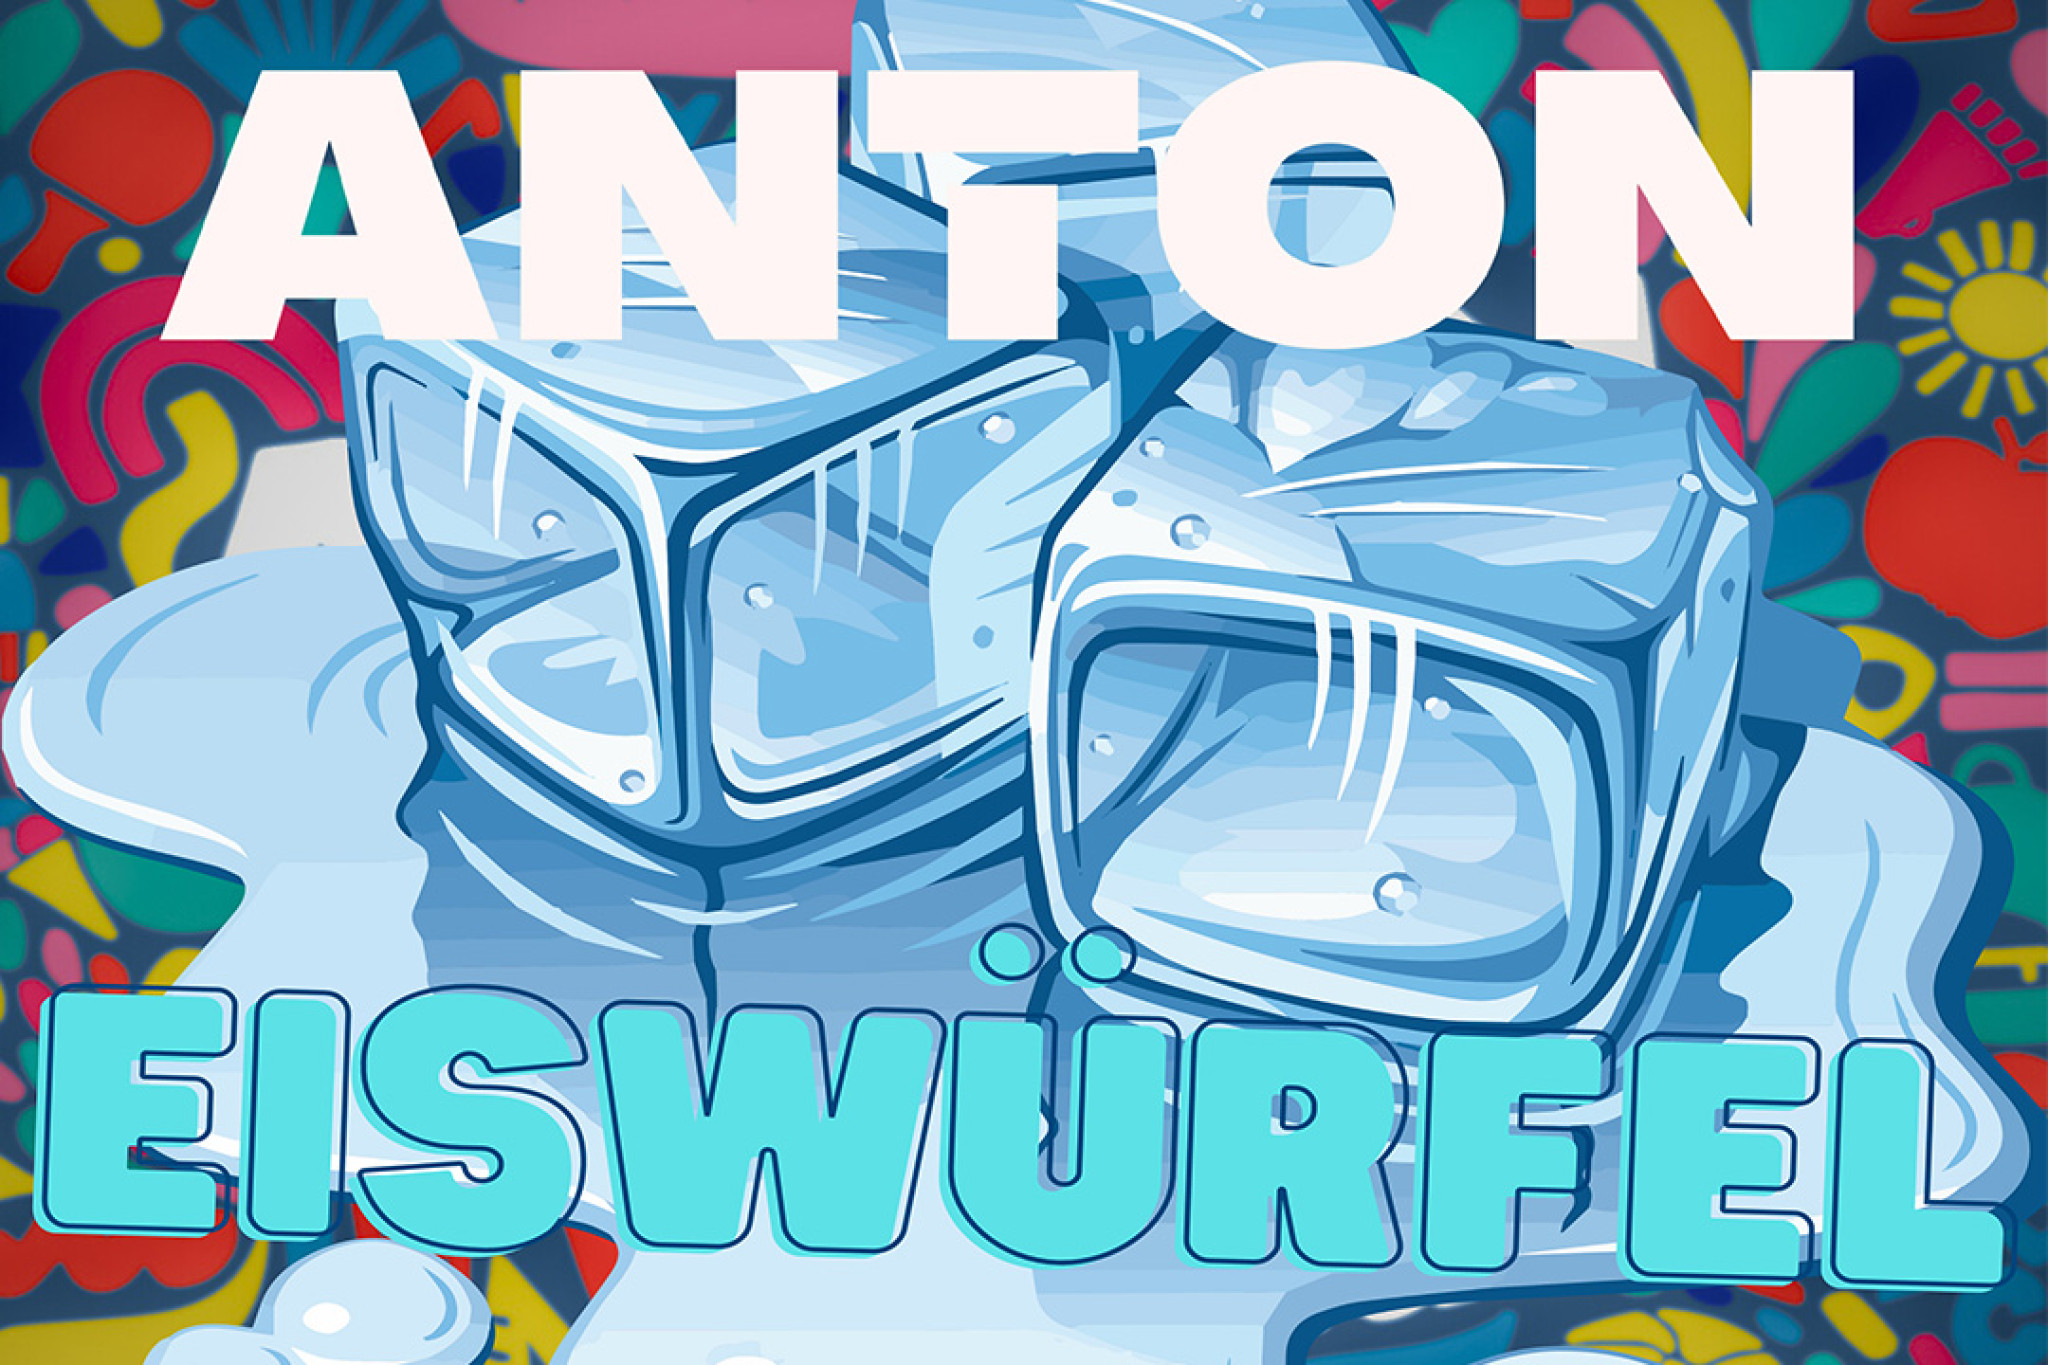 Anton stimmt uns mit seiner neuen Single "Eiswürfel" auf den Sommer ein!